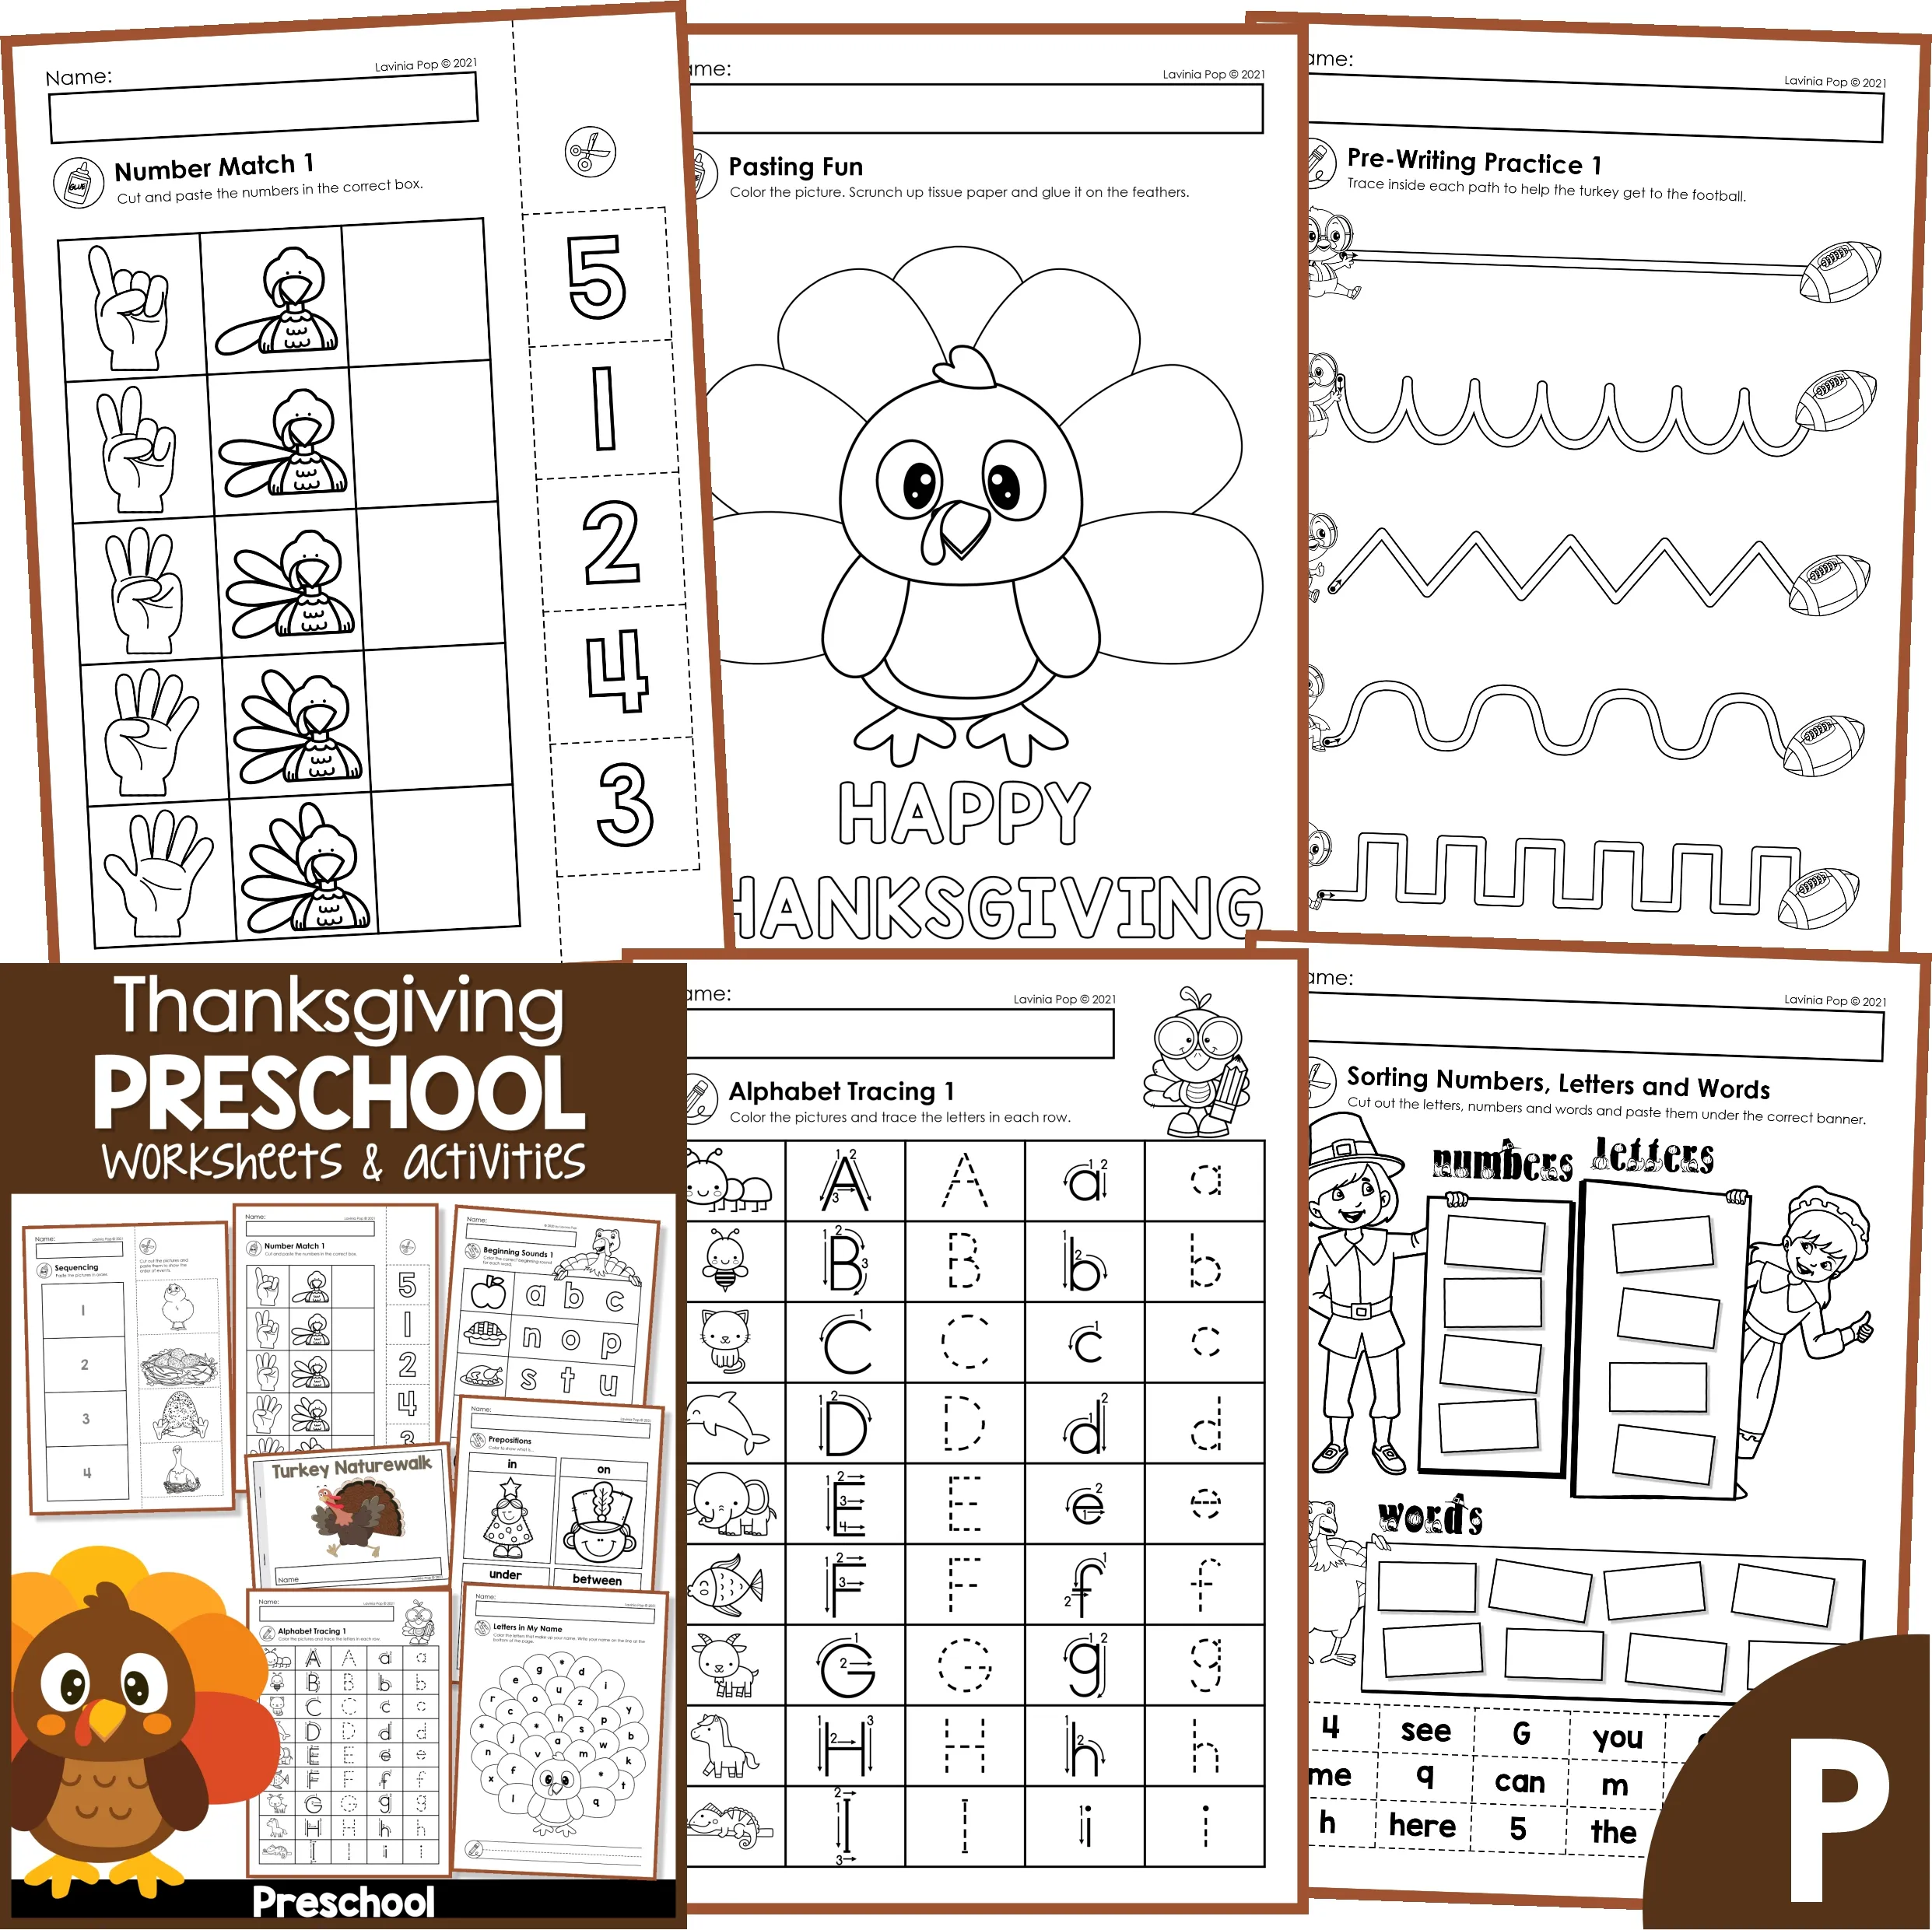 Free Printable Color by Number Food Preschool Worksheets  Preschool  worksheets, Food themes, Color by number printable